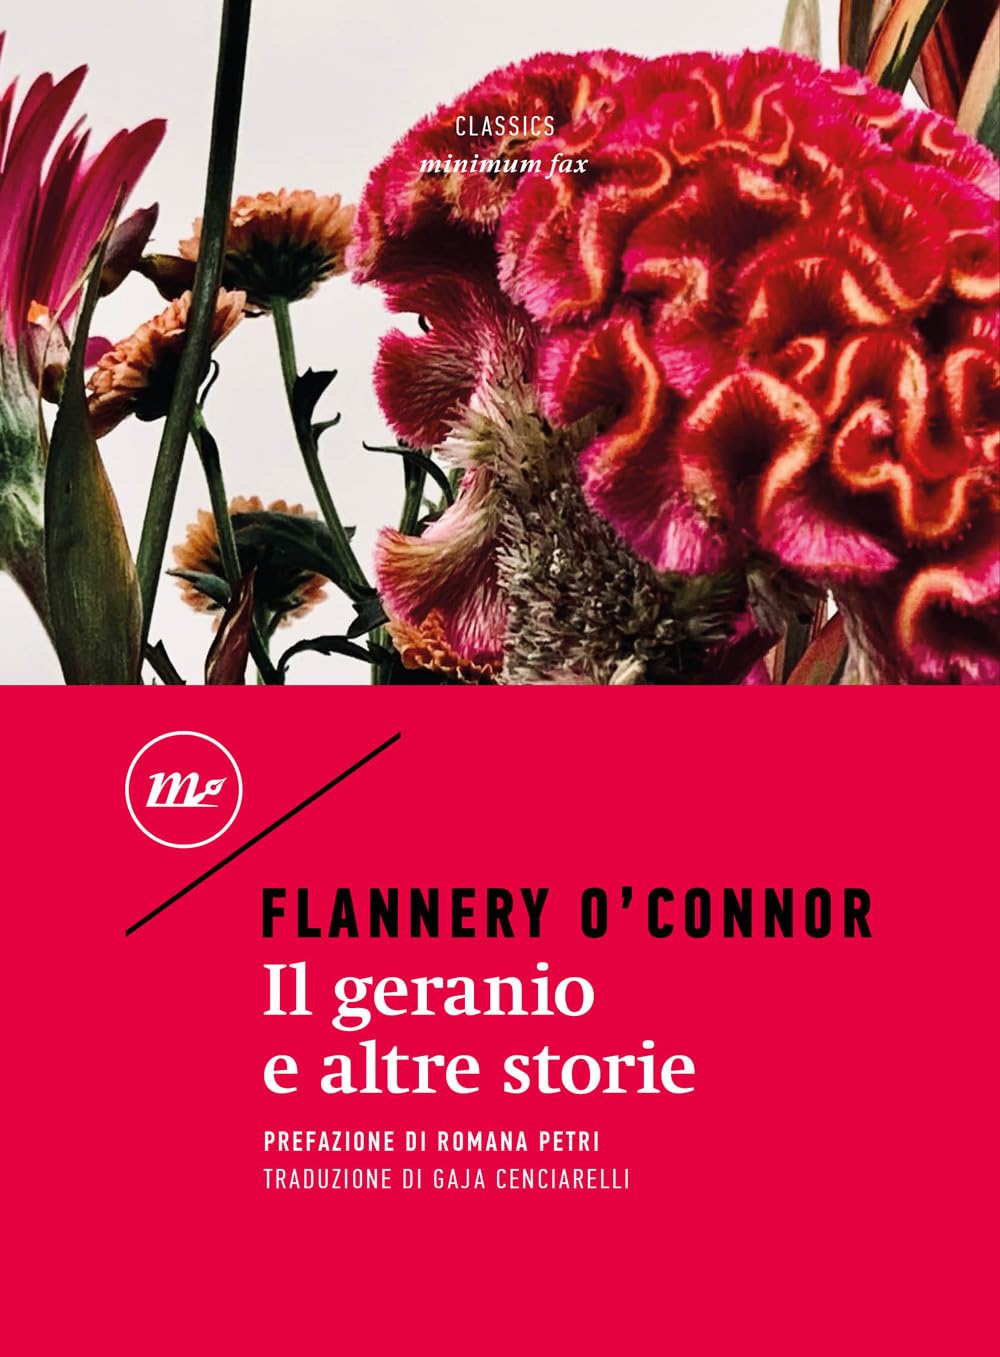 Il Geranio E Altre Storie di Flannery O’Connor – Recensione